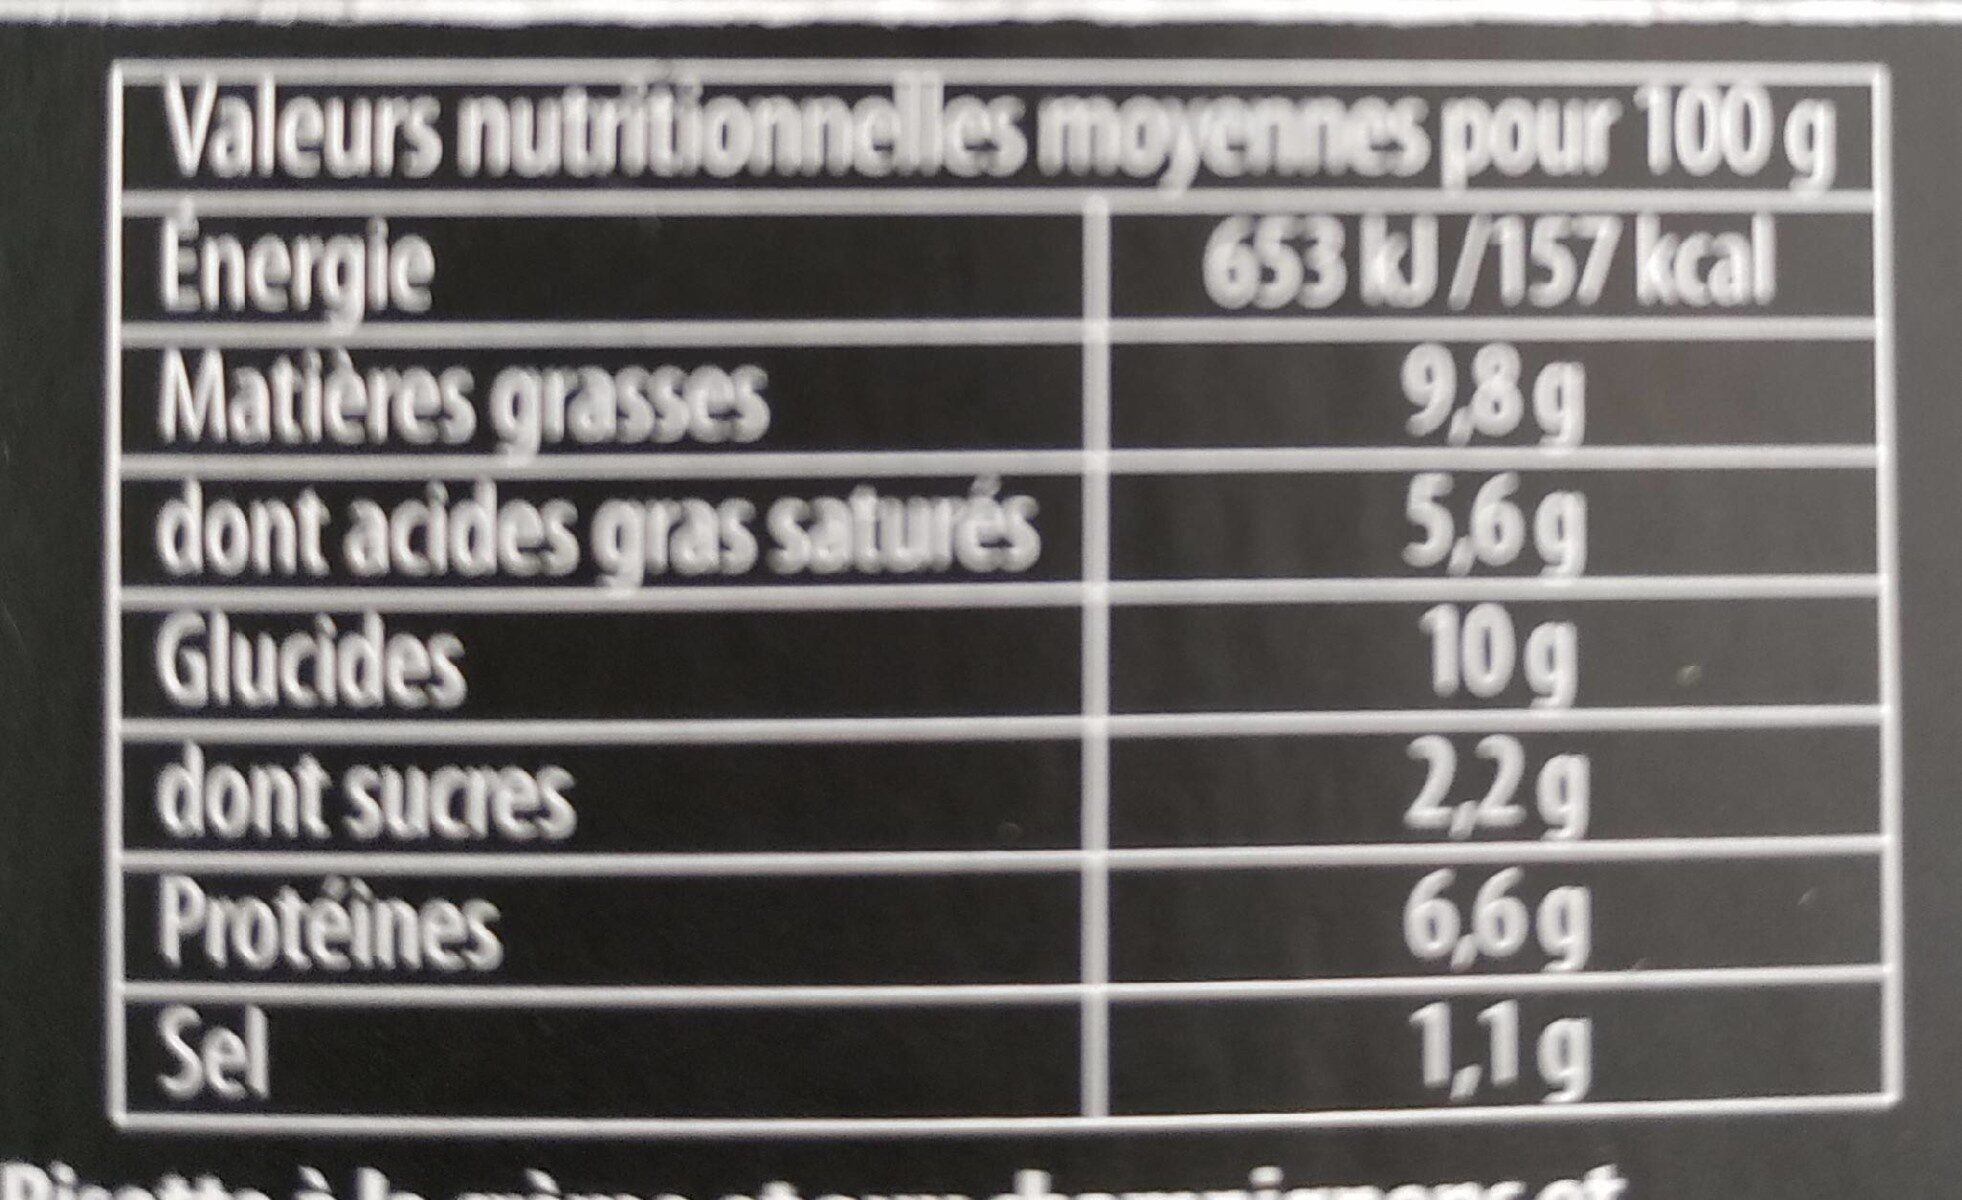 Filets de poulet & risotto cremeux de champignons - Nutrition facts - fr